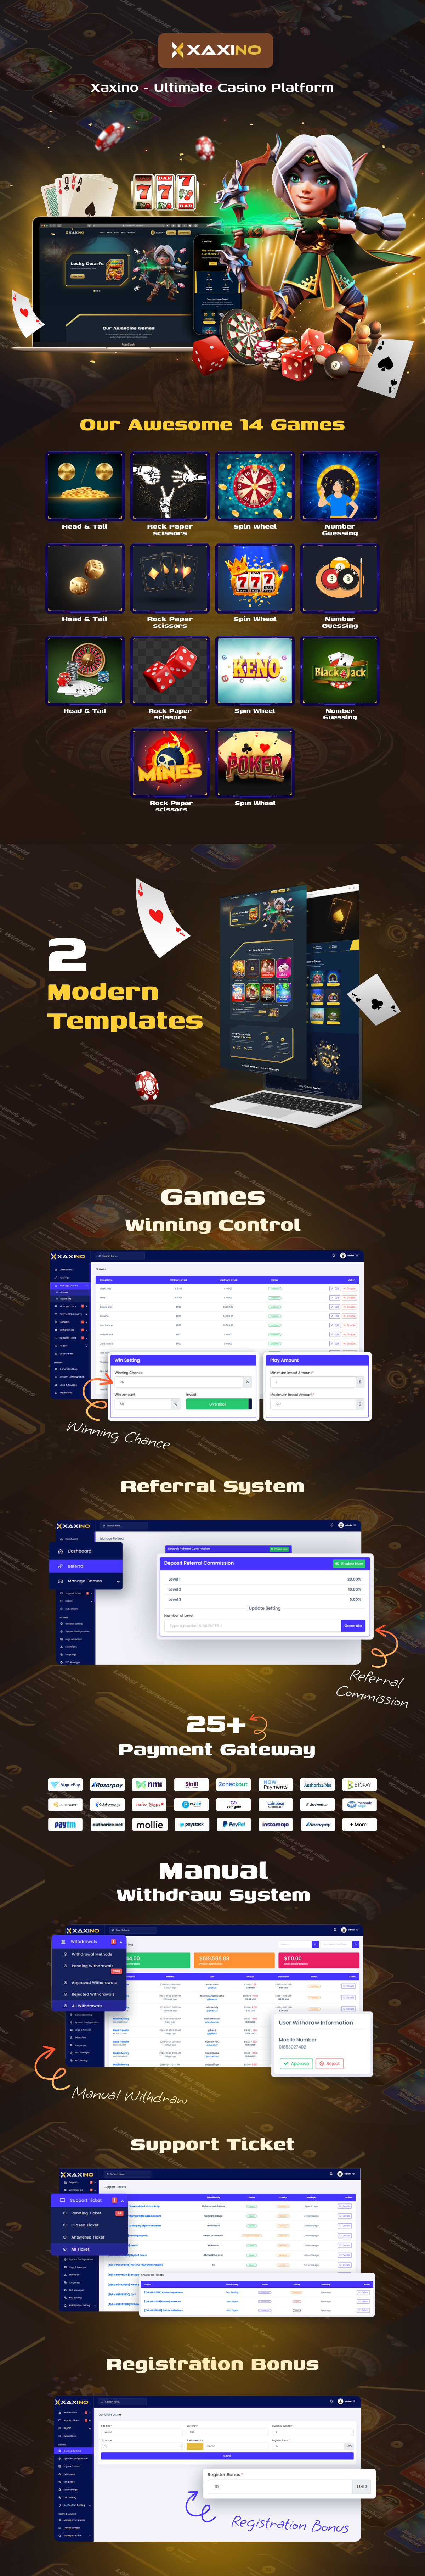 Xaxino - Ultimate Casino Platform - 3